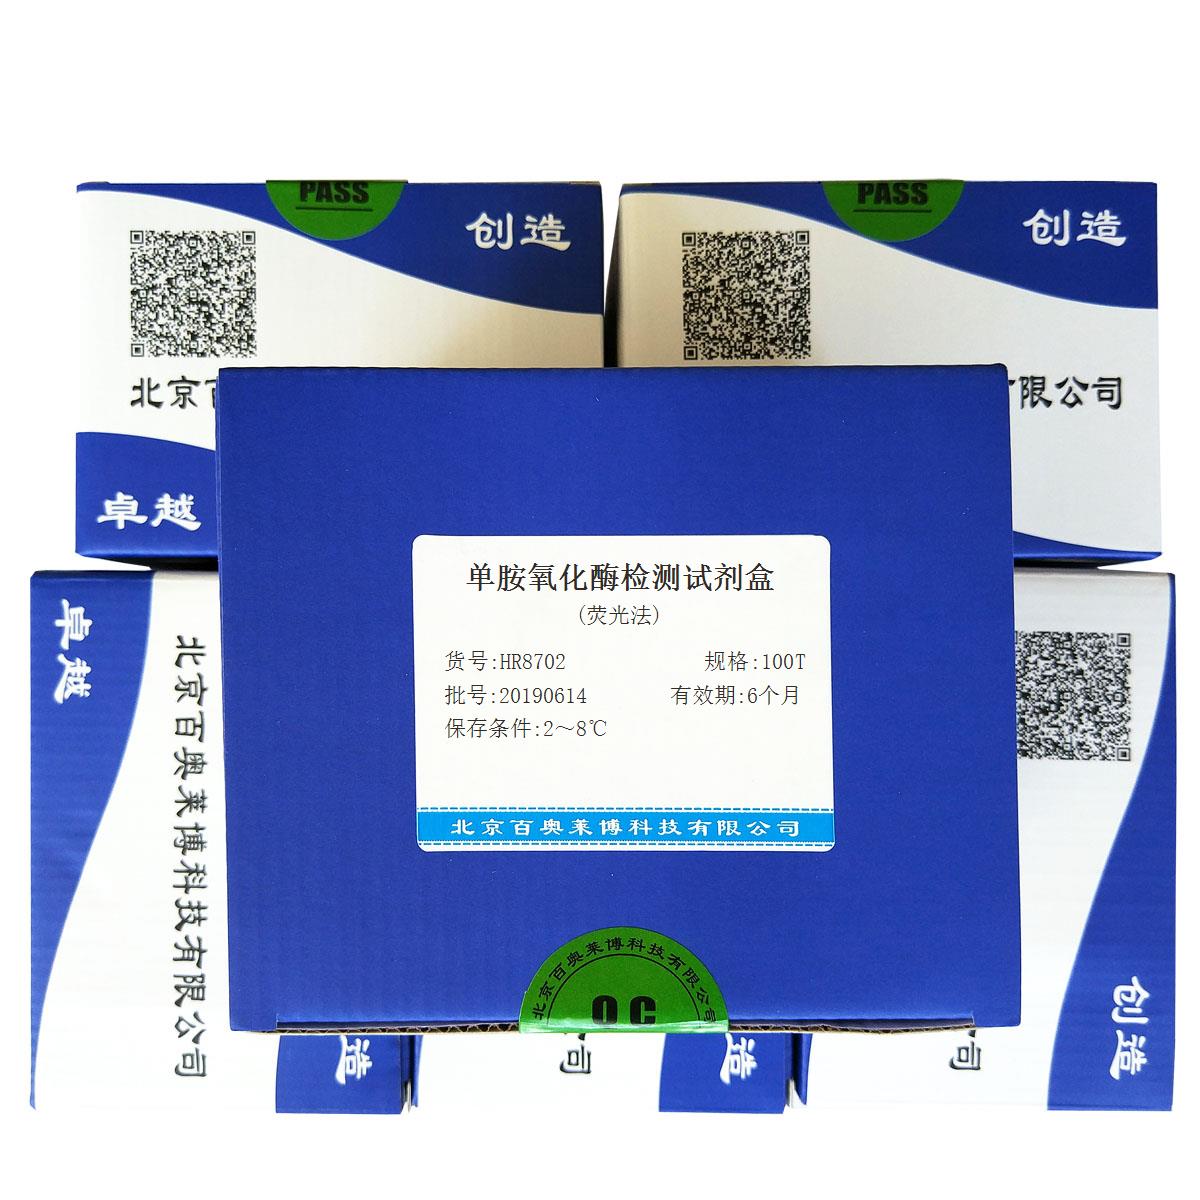 单胺氧化酶检测试剂盒(荧光法)北京品牌